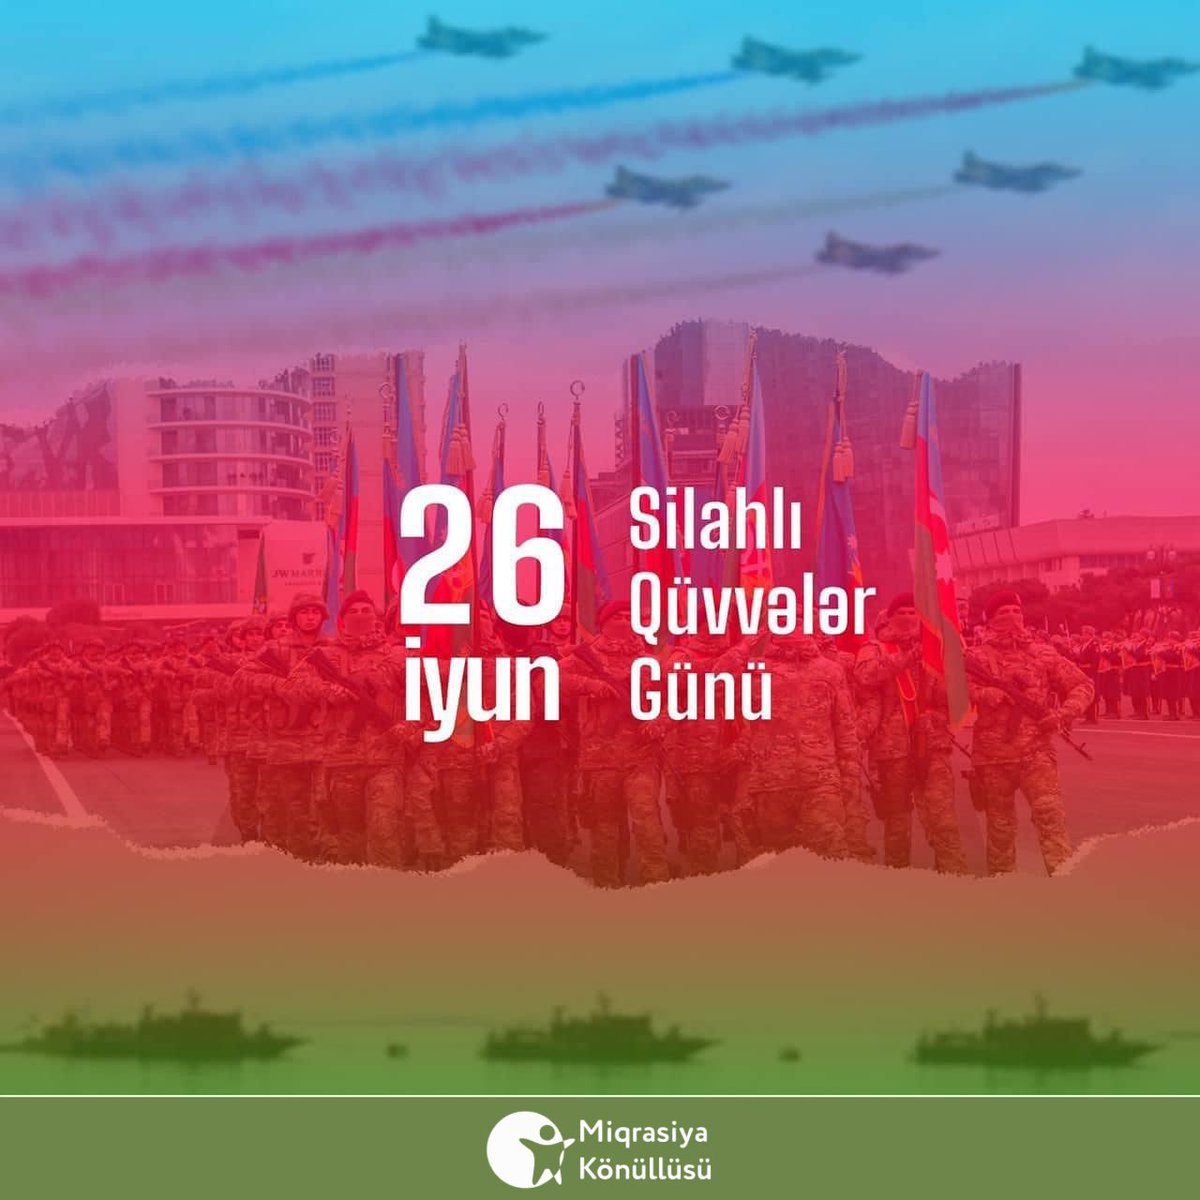 26 İyun- Silahlı Qüvvələr Gününüz mübarək!🇦🇿

#MiqrasiyaKönüllüsü #MKİB #SilahlıQüvvələrGünü #26iyun